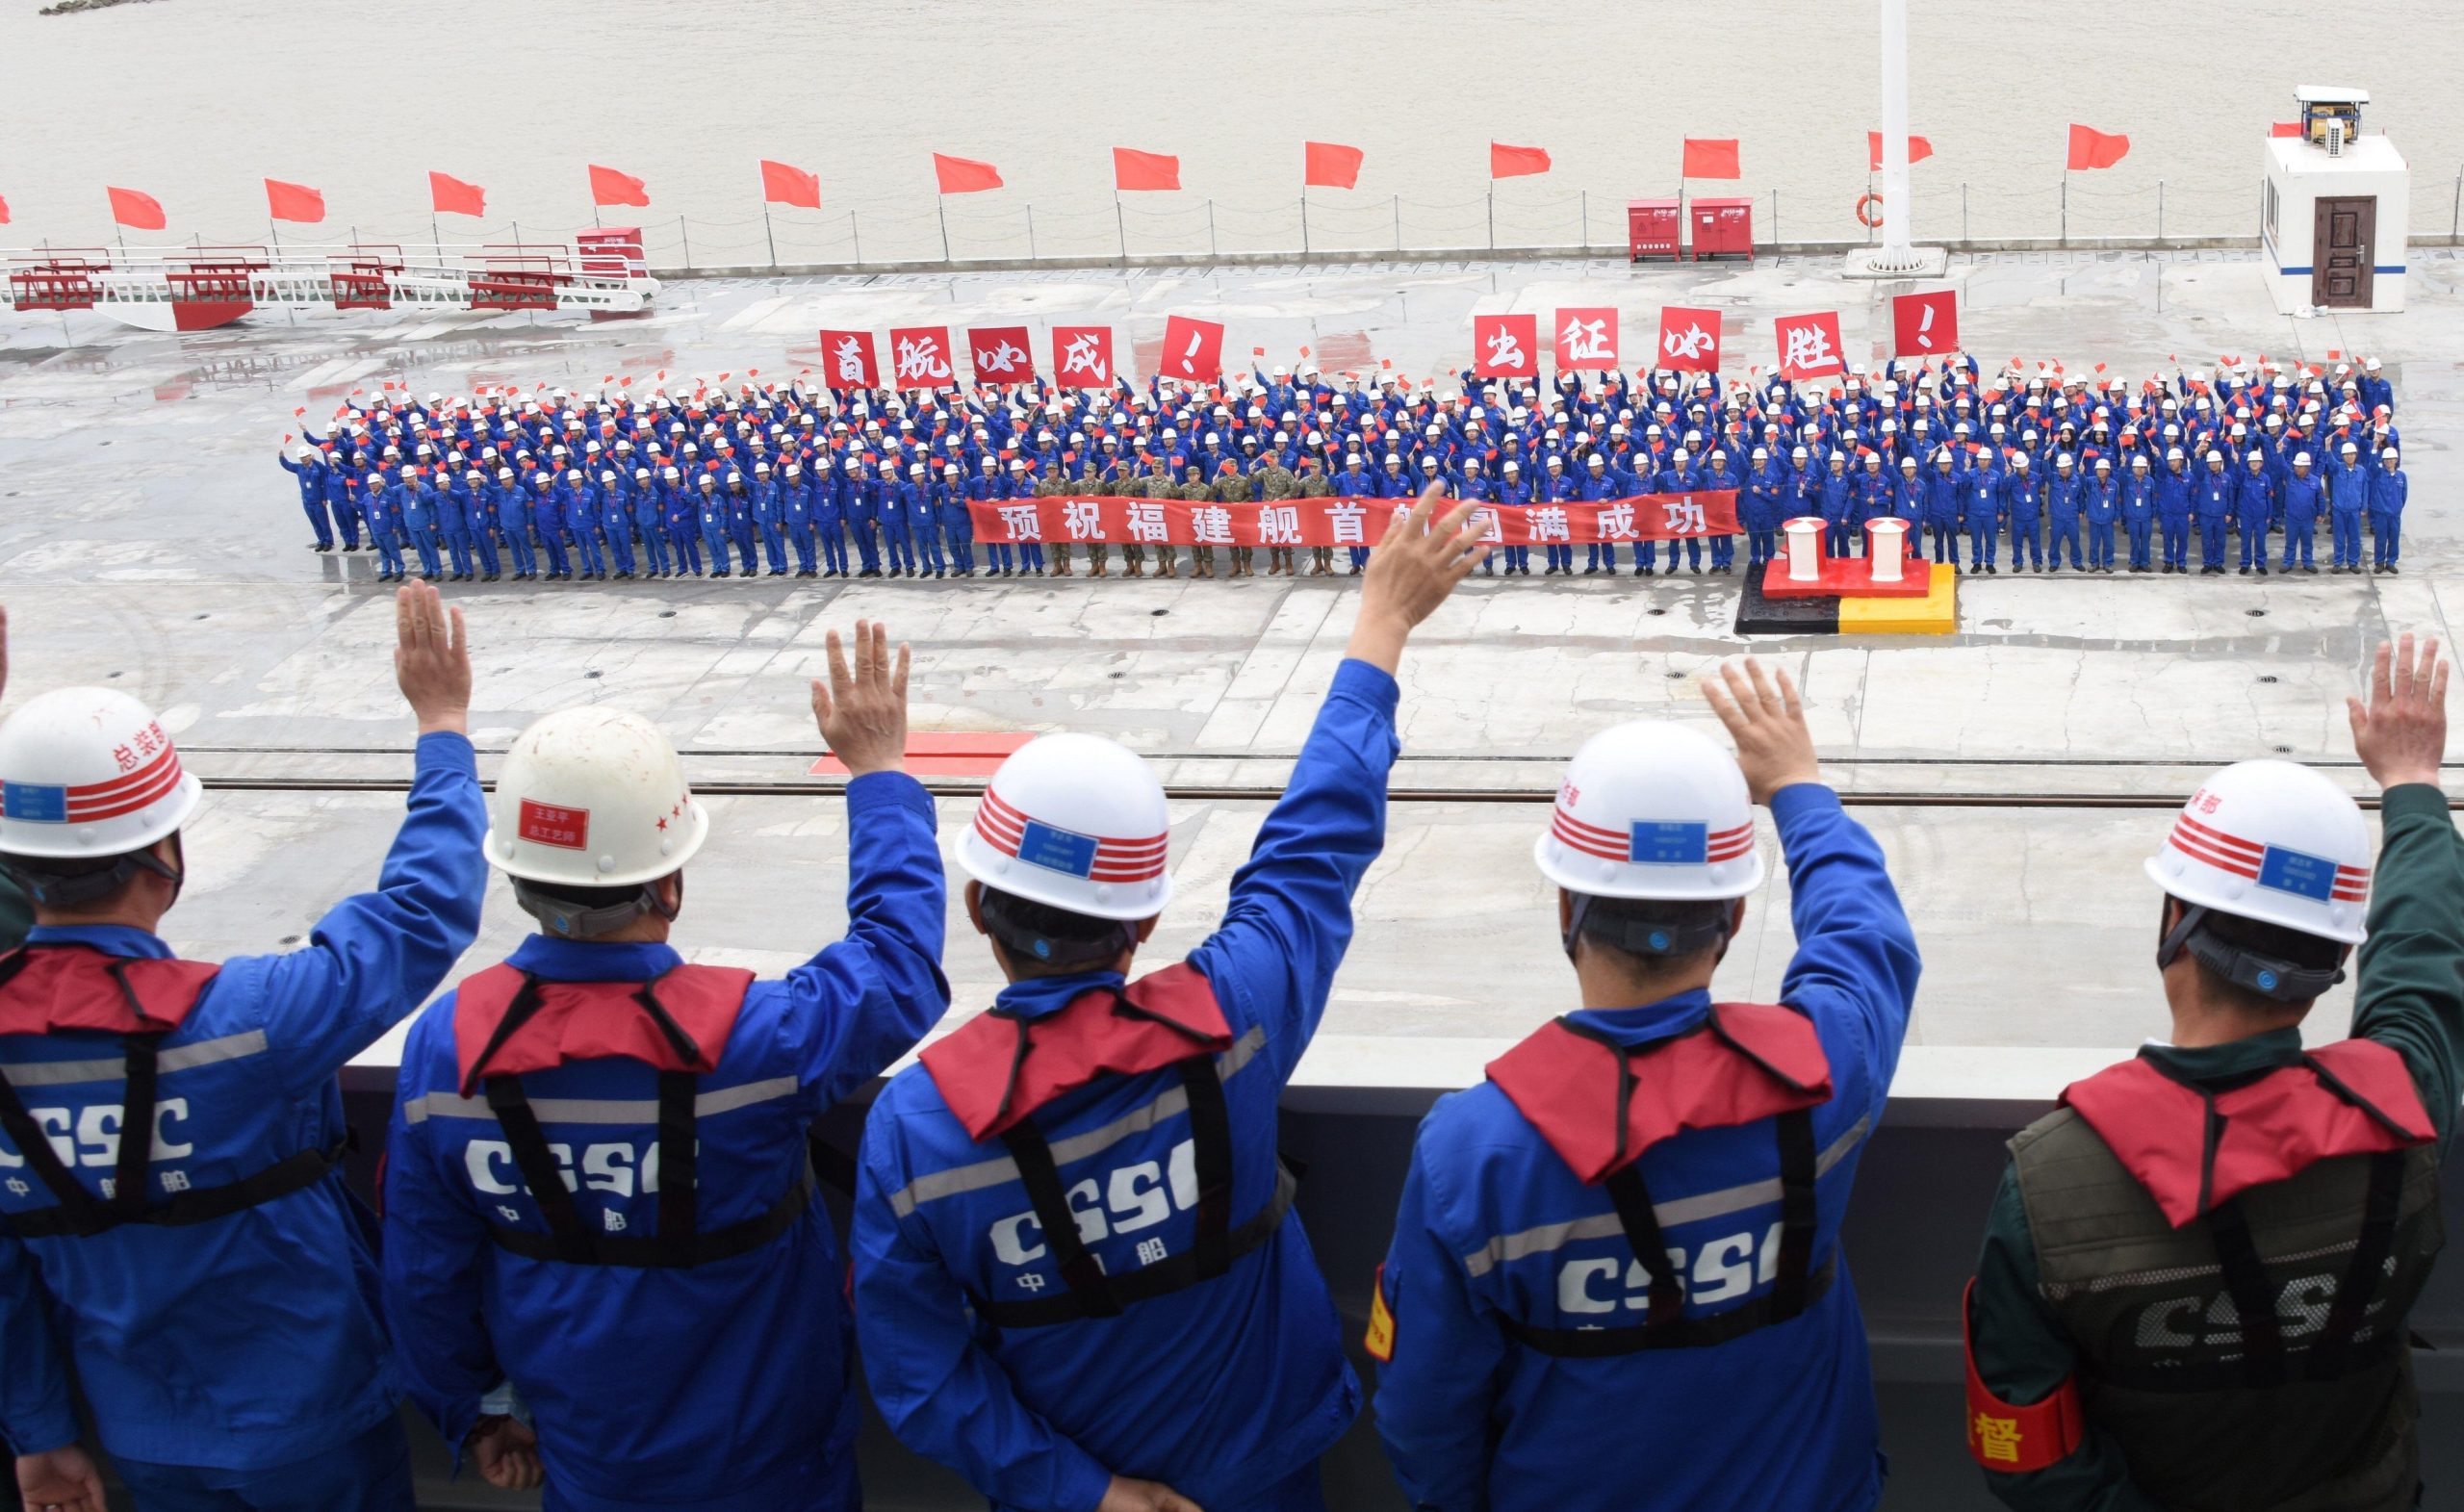 Una ceremonia colorida marcó el inicio de las pruebas en el mar en Shanghái